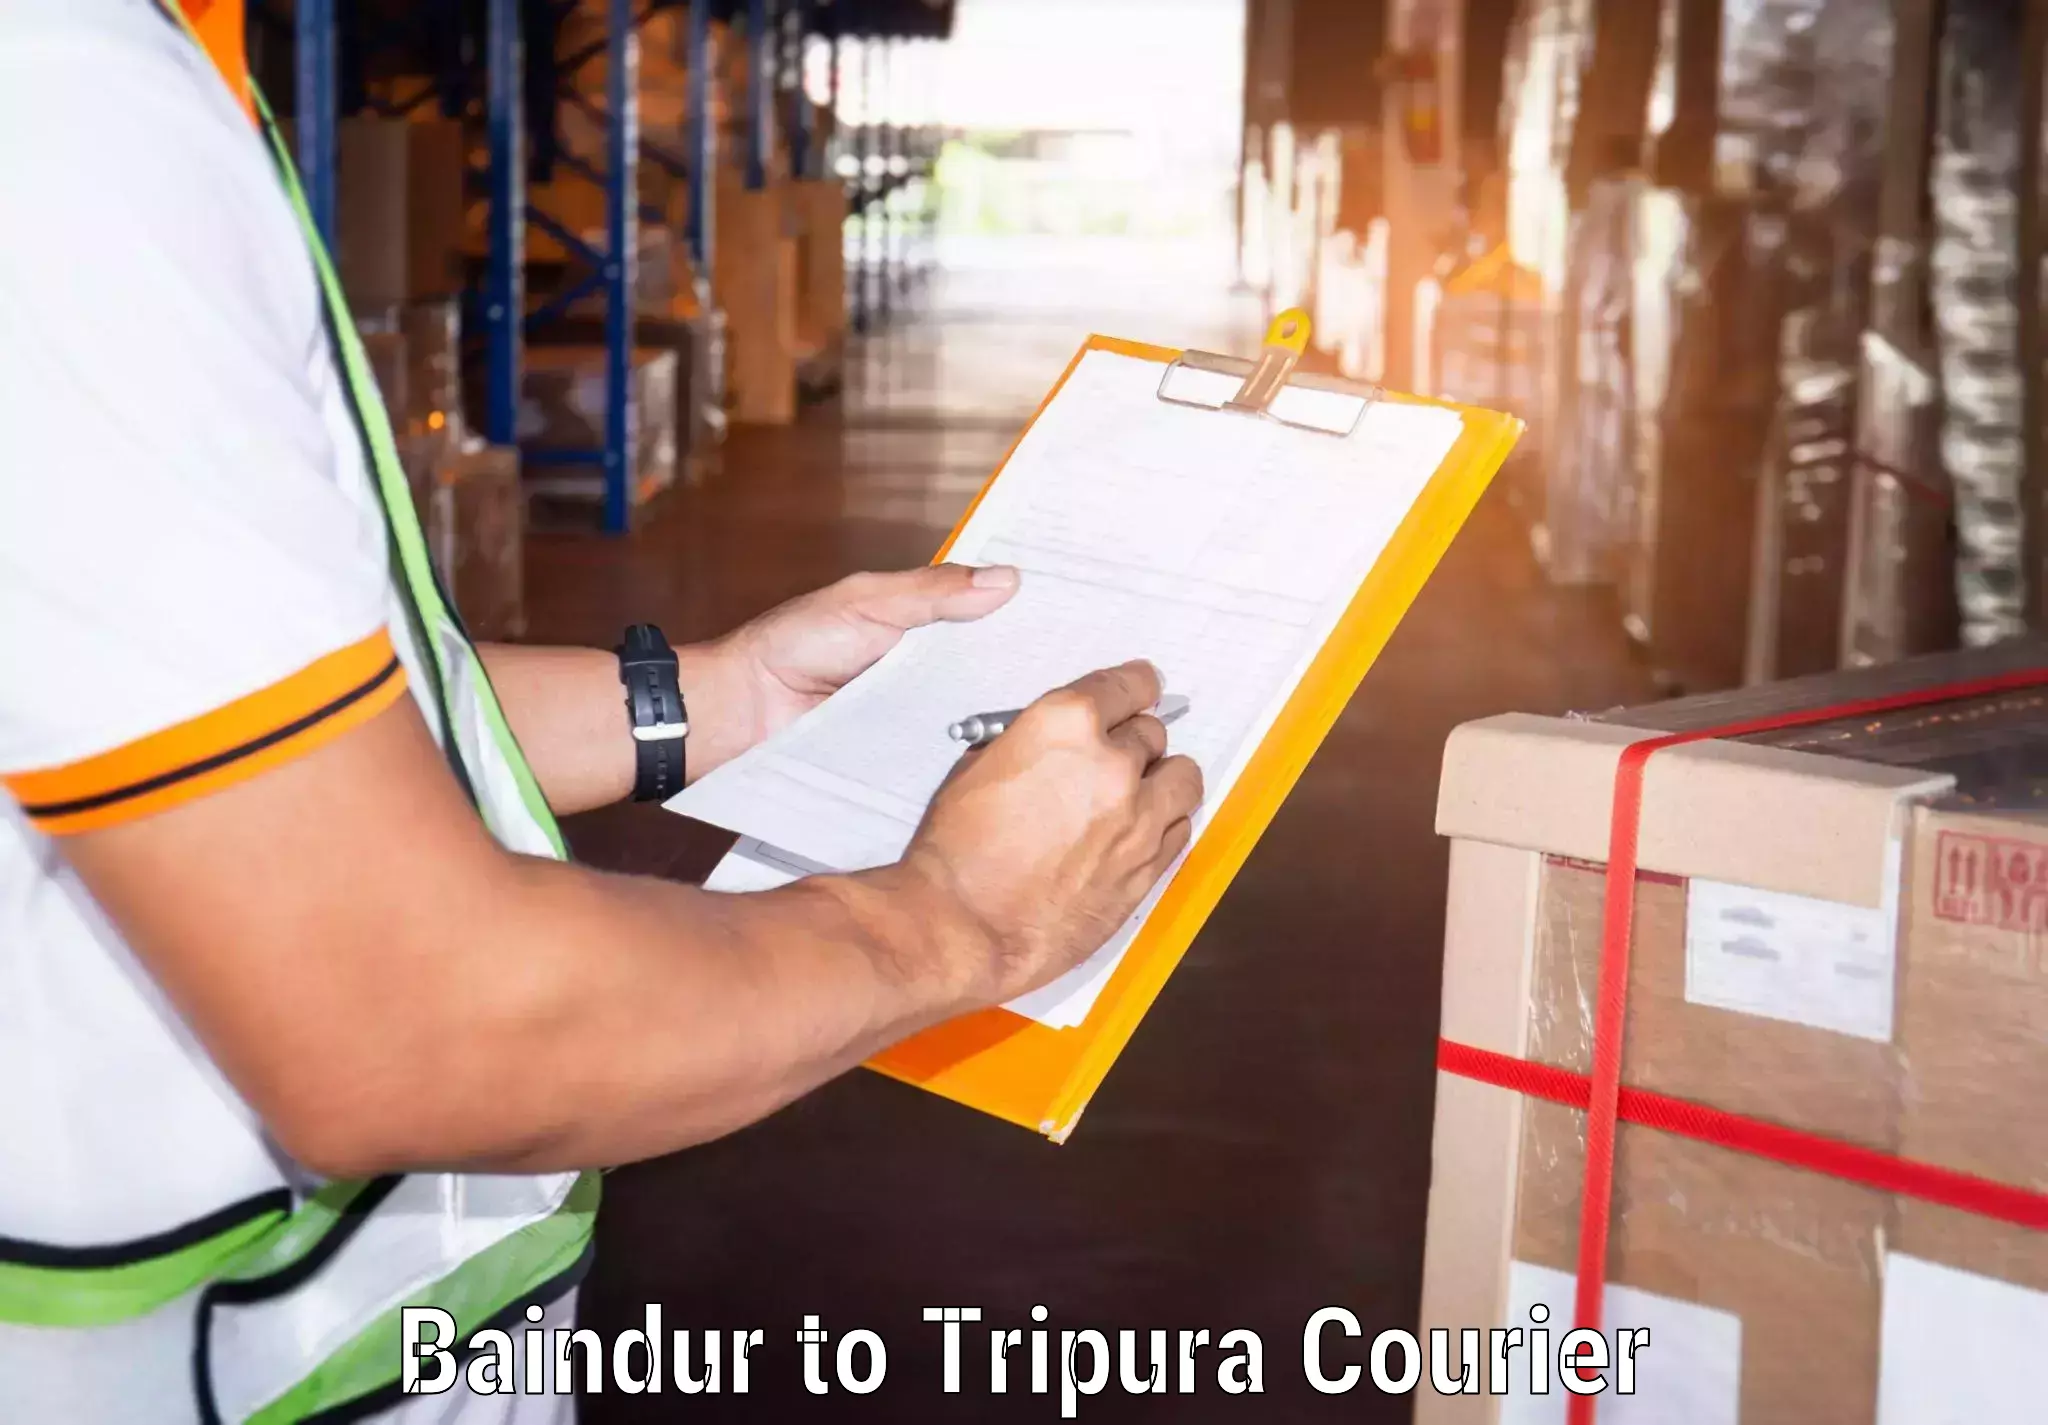 Customer-centric shipping Baindur to Amarpur Gomati